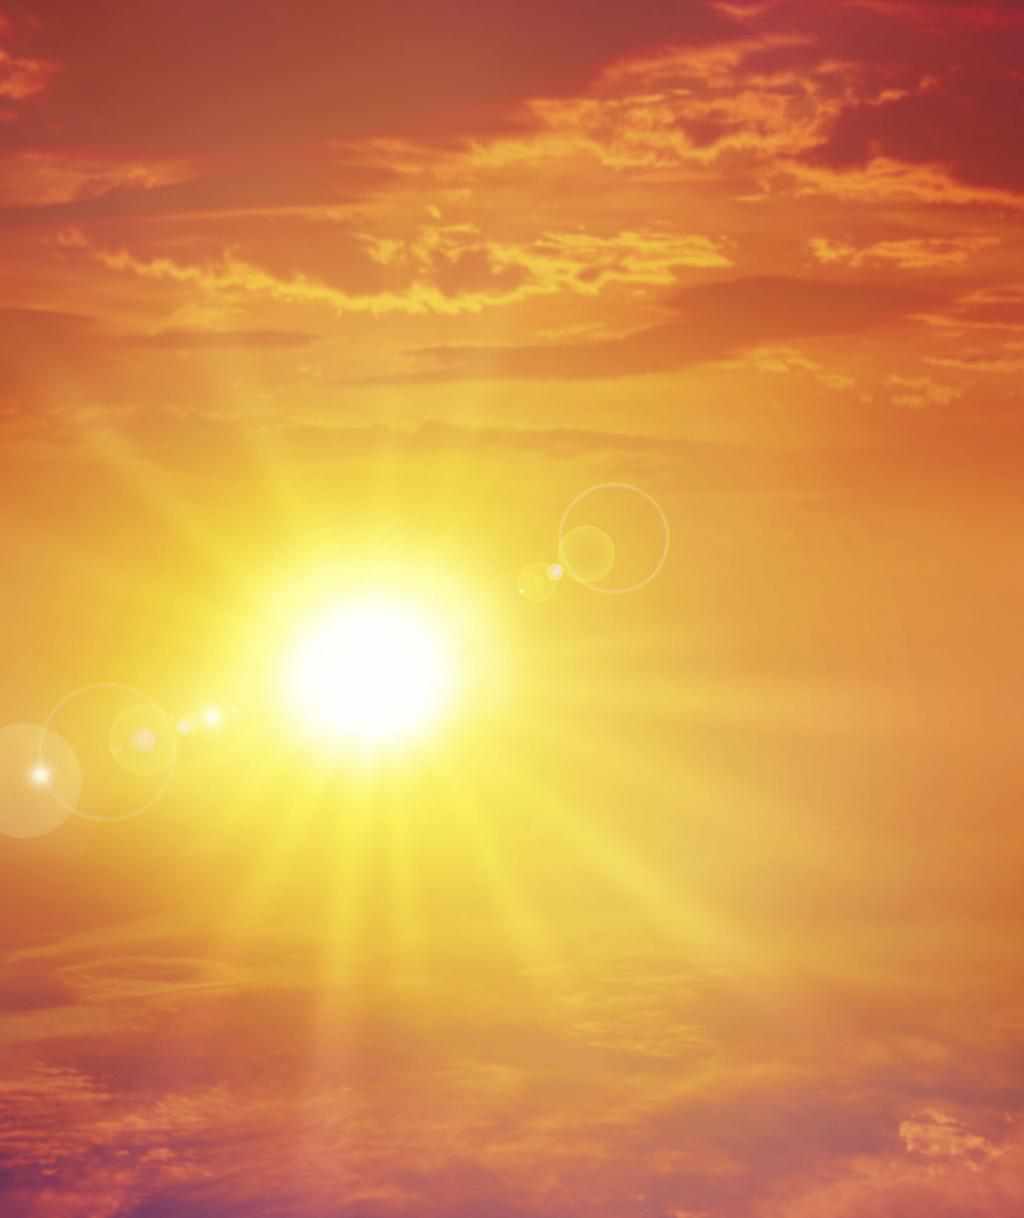 Як вижити в спеку та не перегрітися на сонці – поради від МОЗ